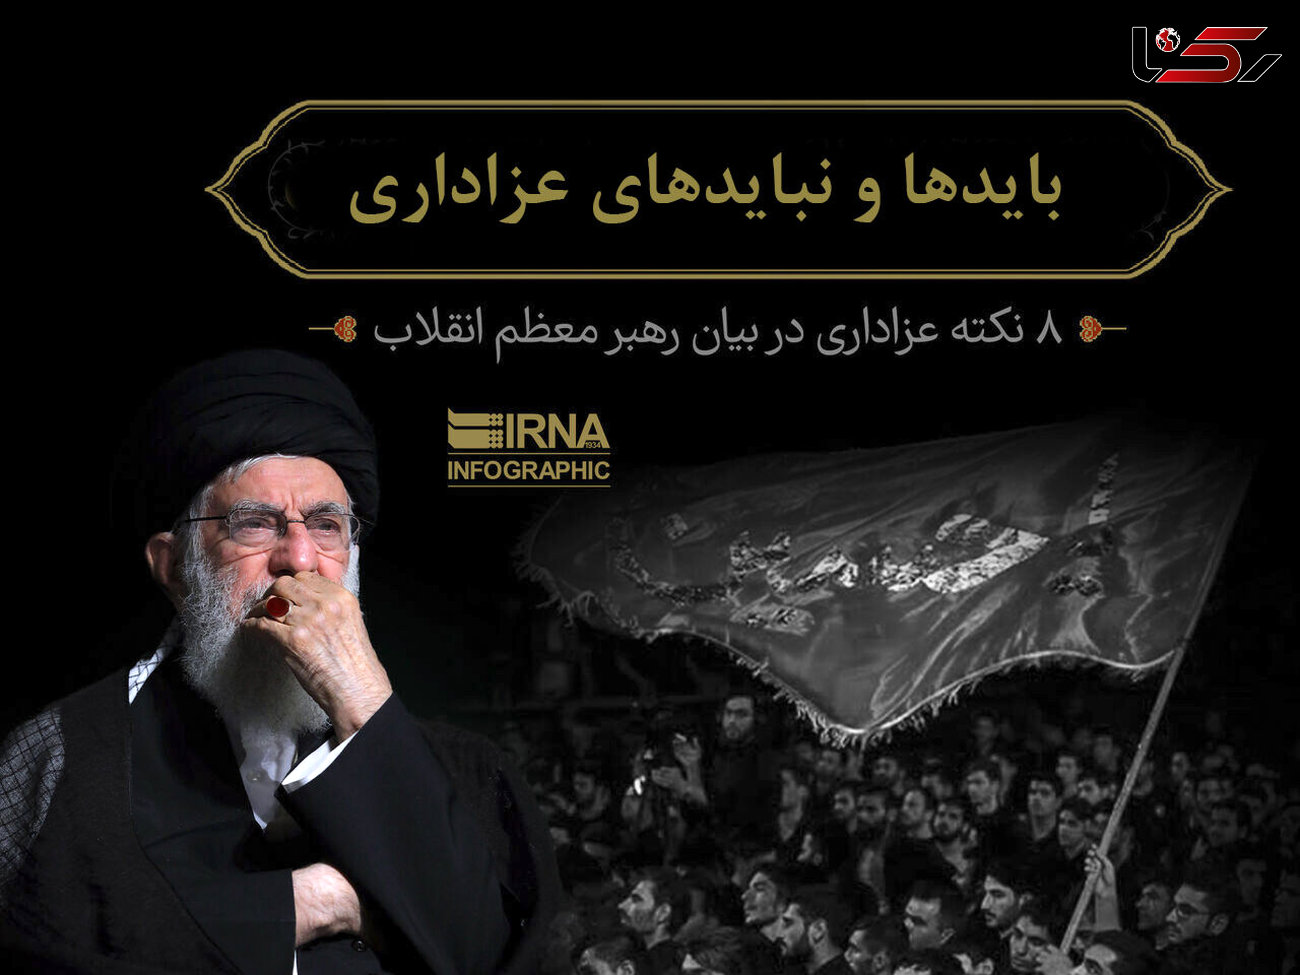 عزاداران حسینی از ایجاد مزاحمت برای همسایگان بپرهیزند+اینفوگرافیک